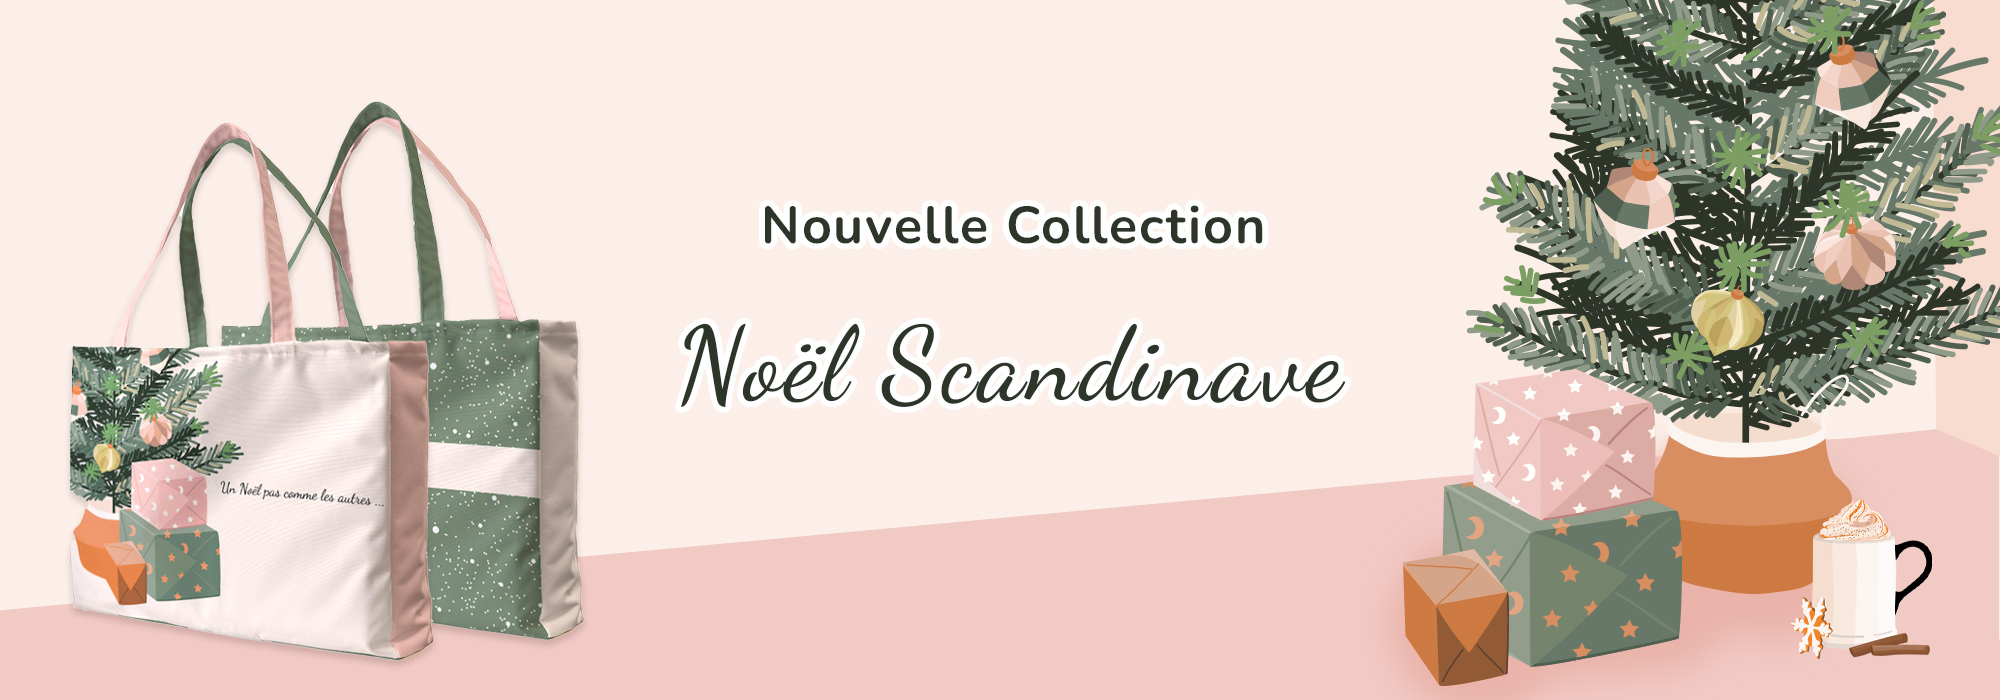 collection noel scandinave